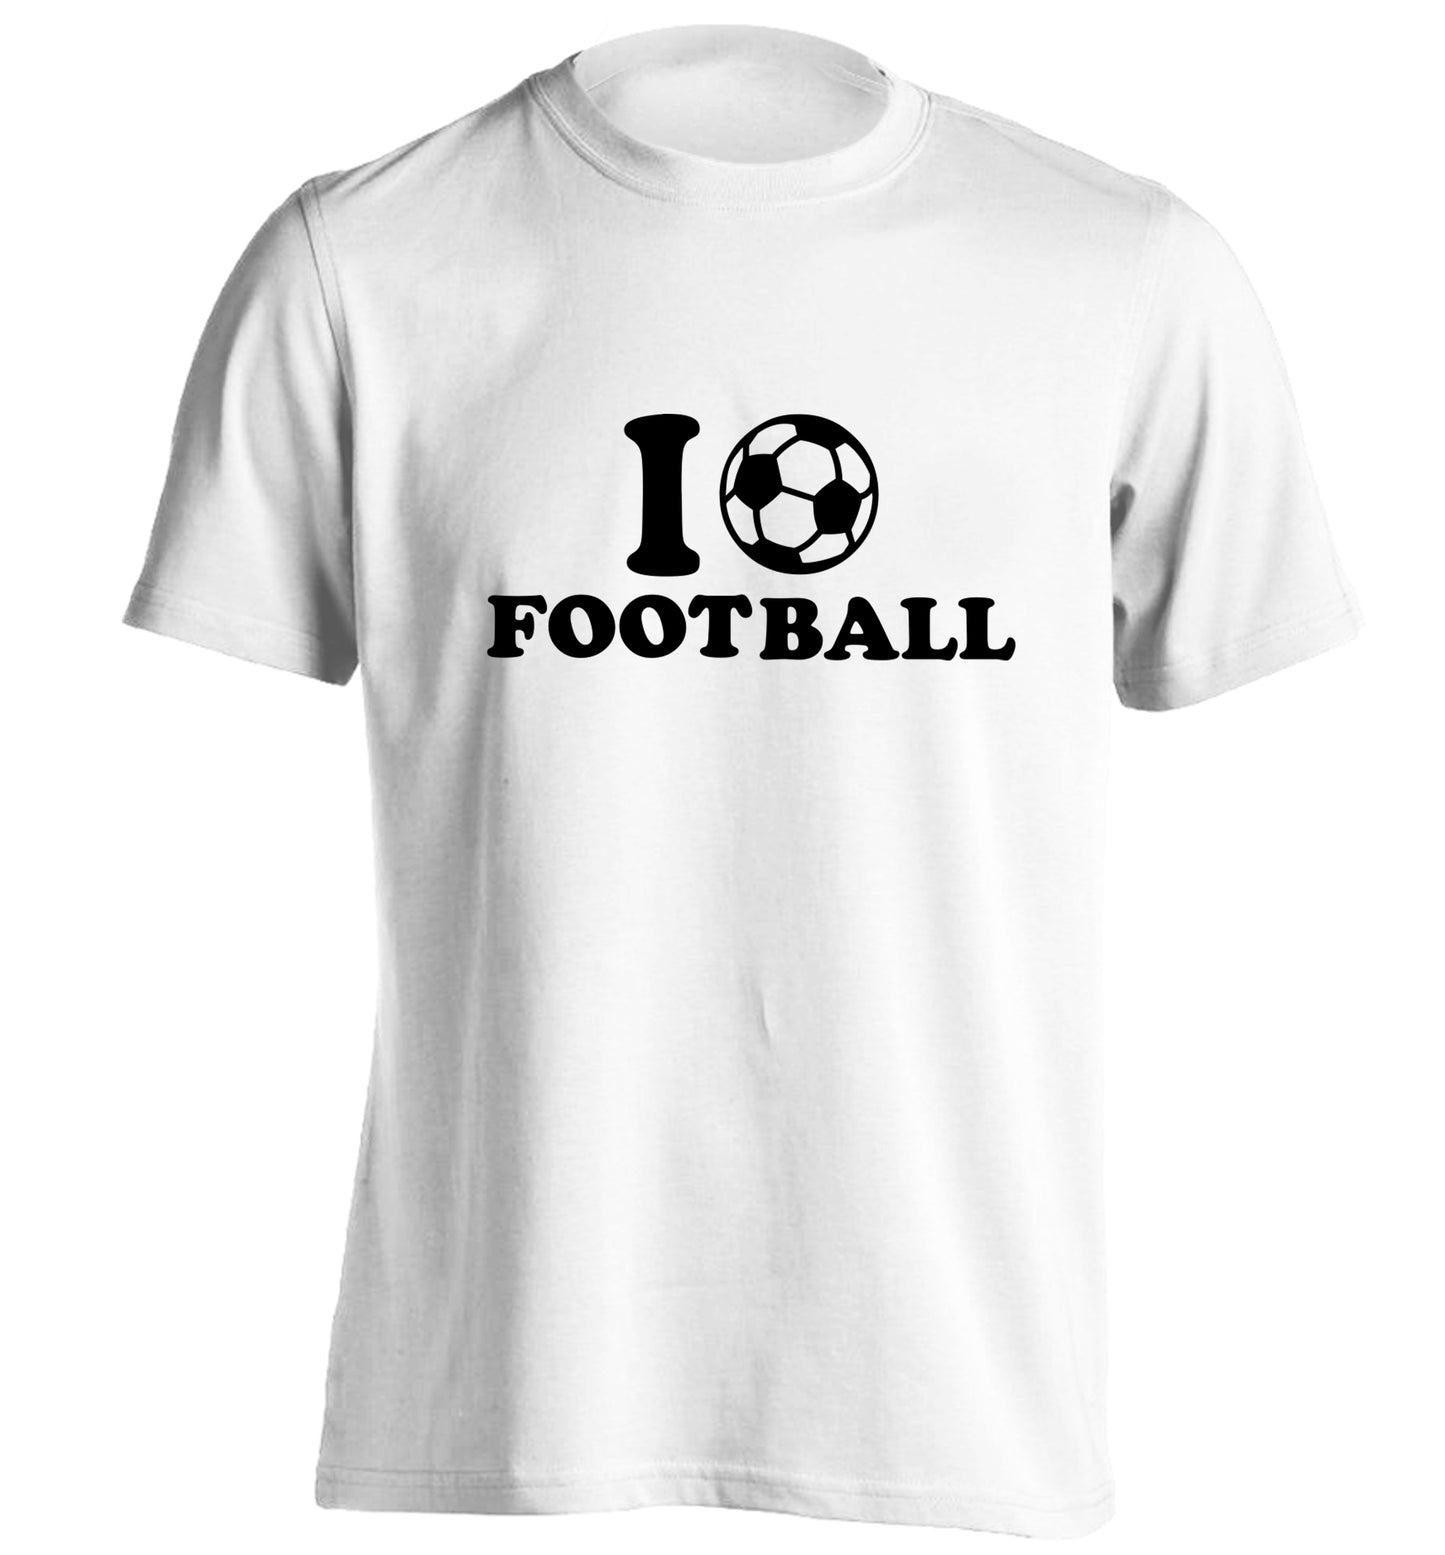 I love football adults unisexwhite Tshirt 2XL